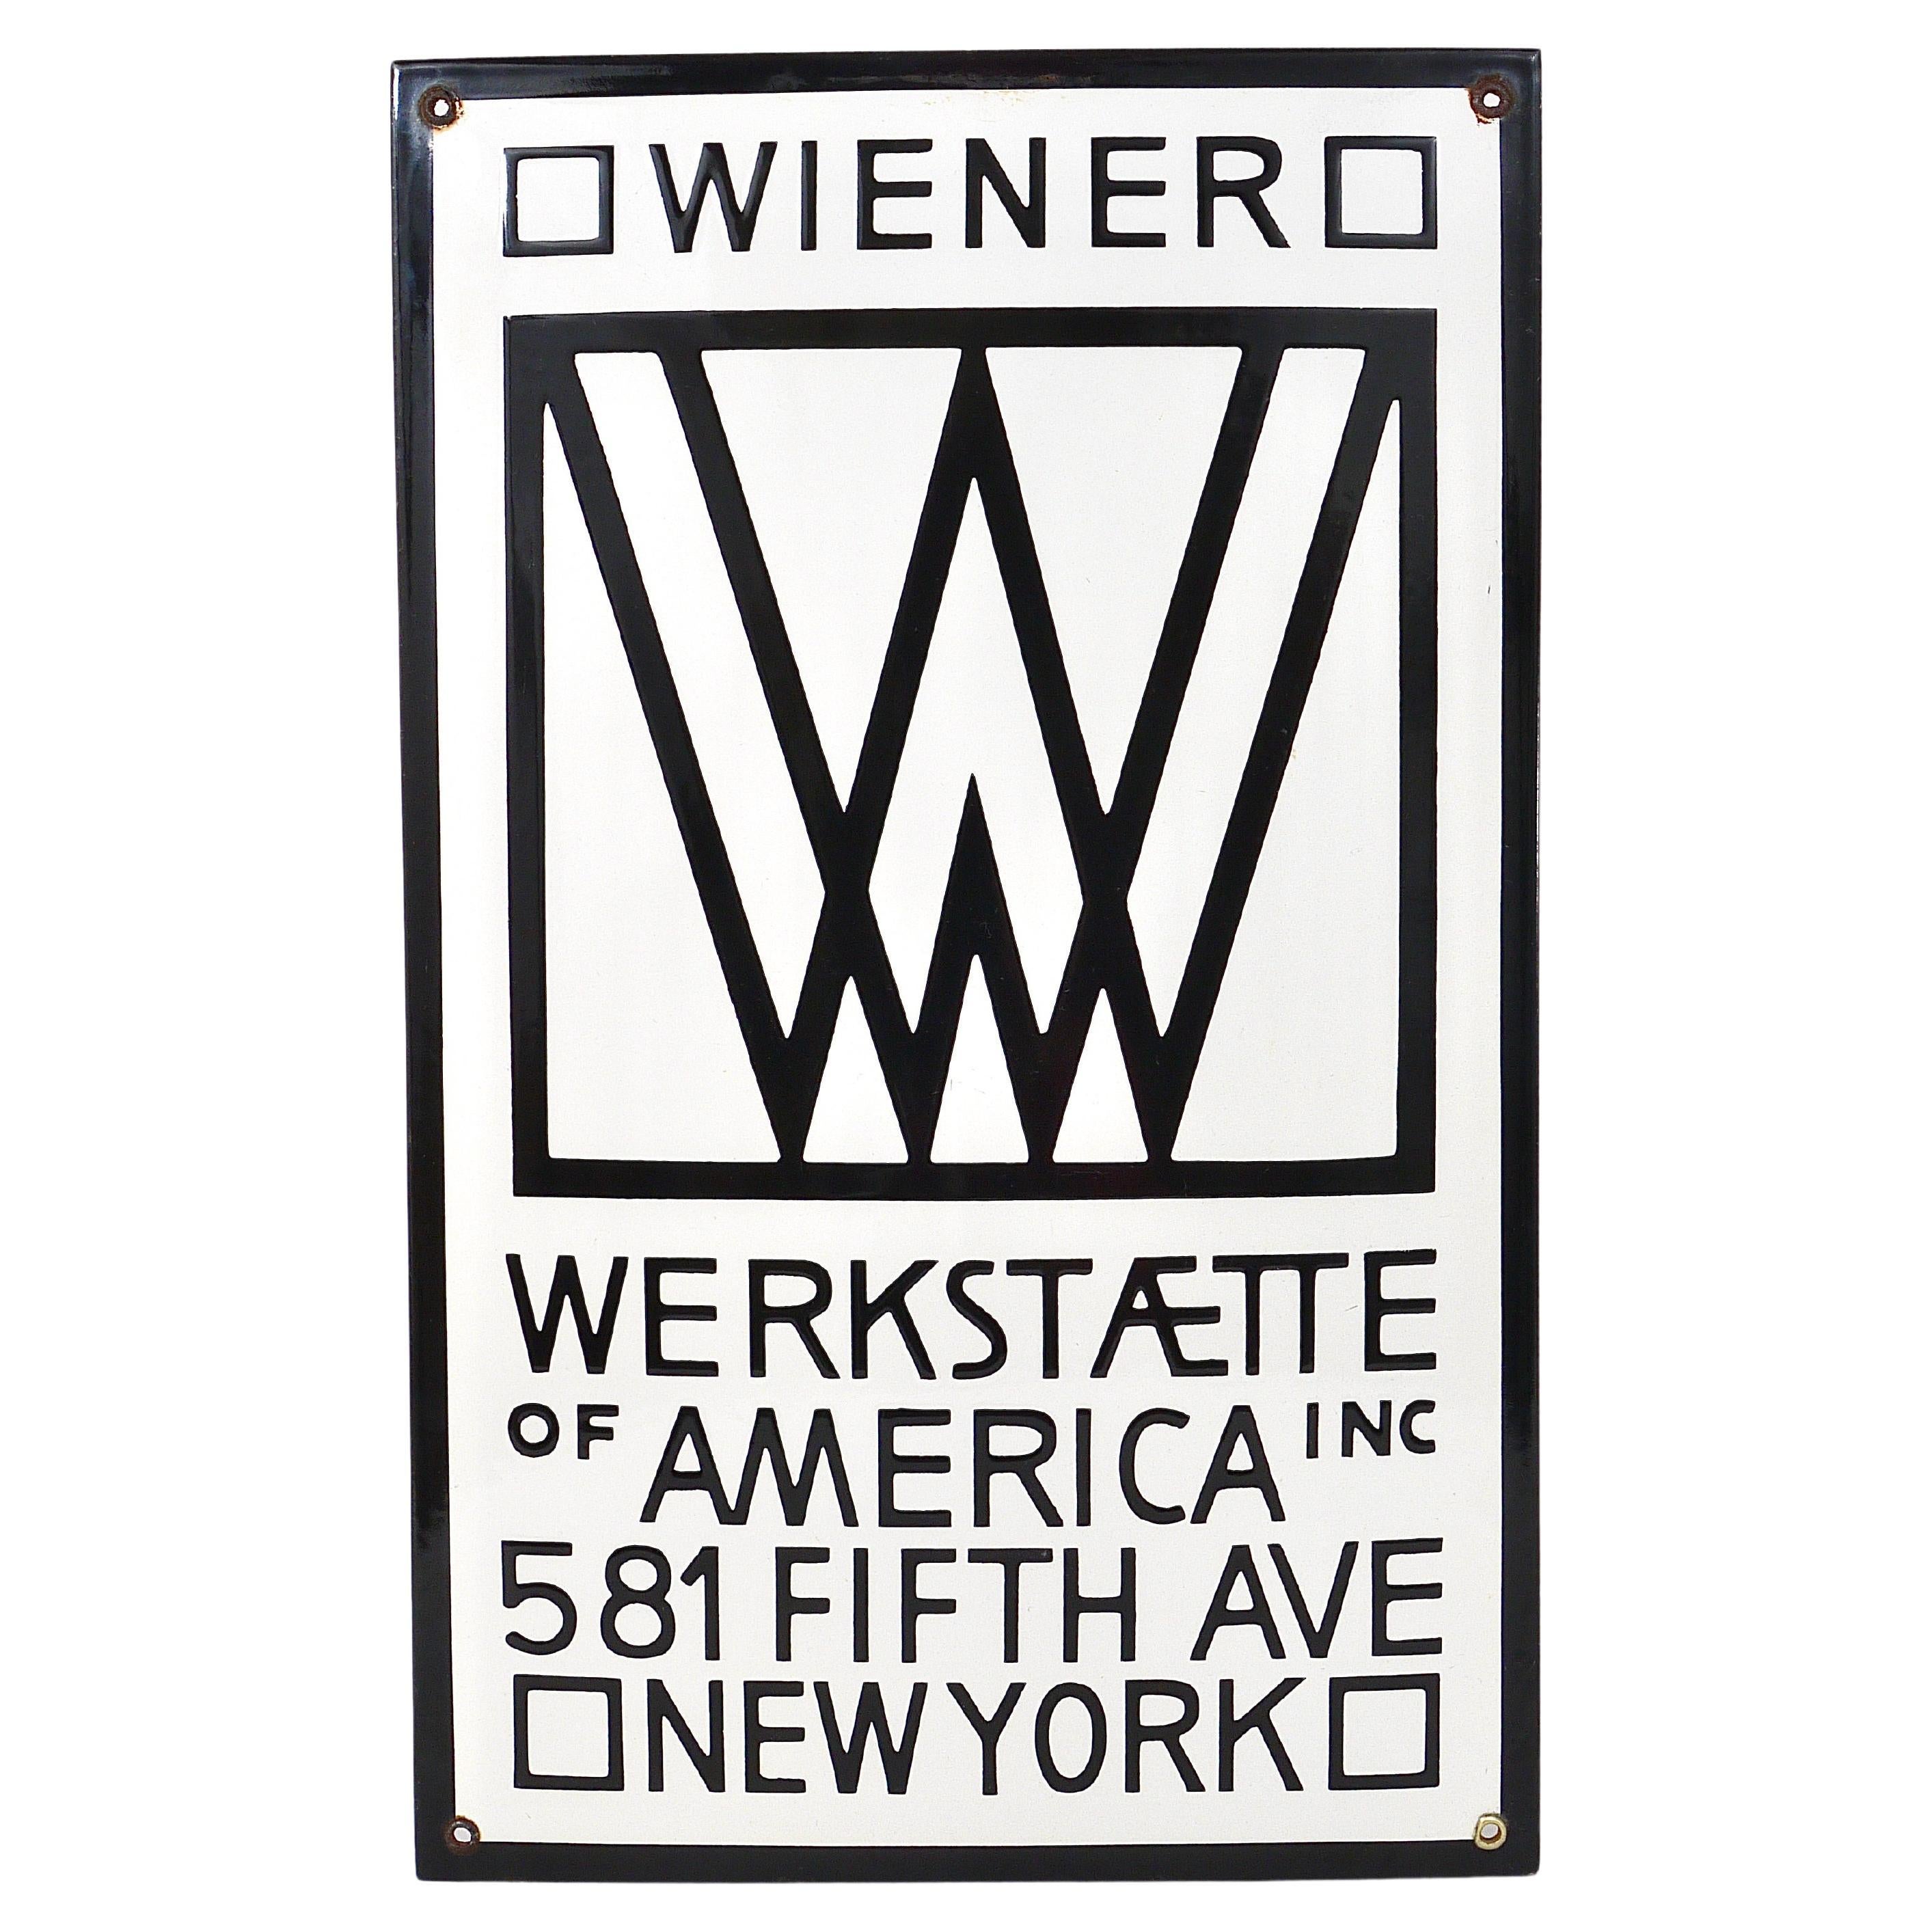 Rare Wiener Werkstätte of America Inc New York Enameled Advertising Sign